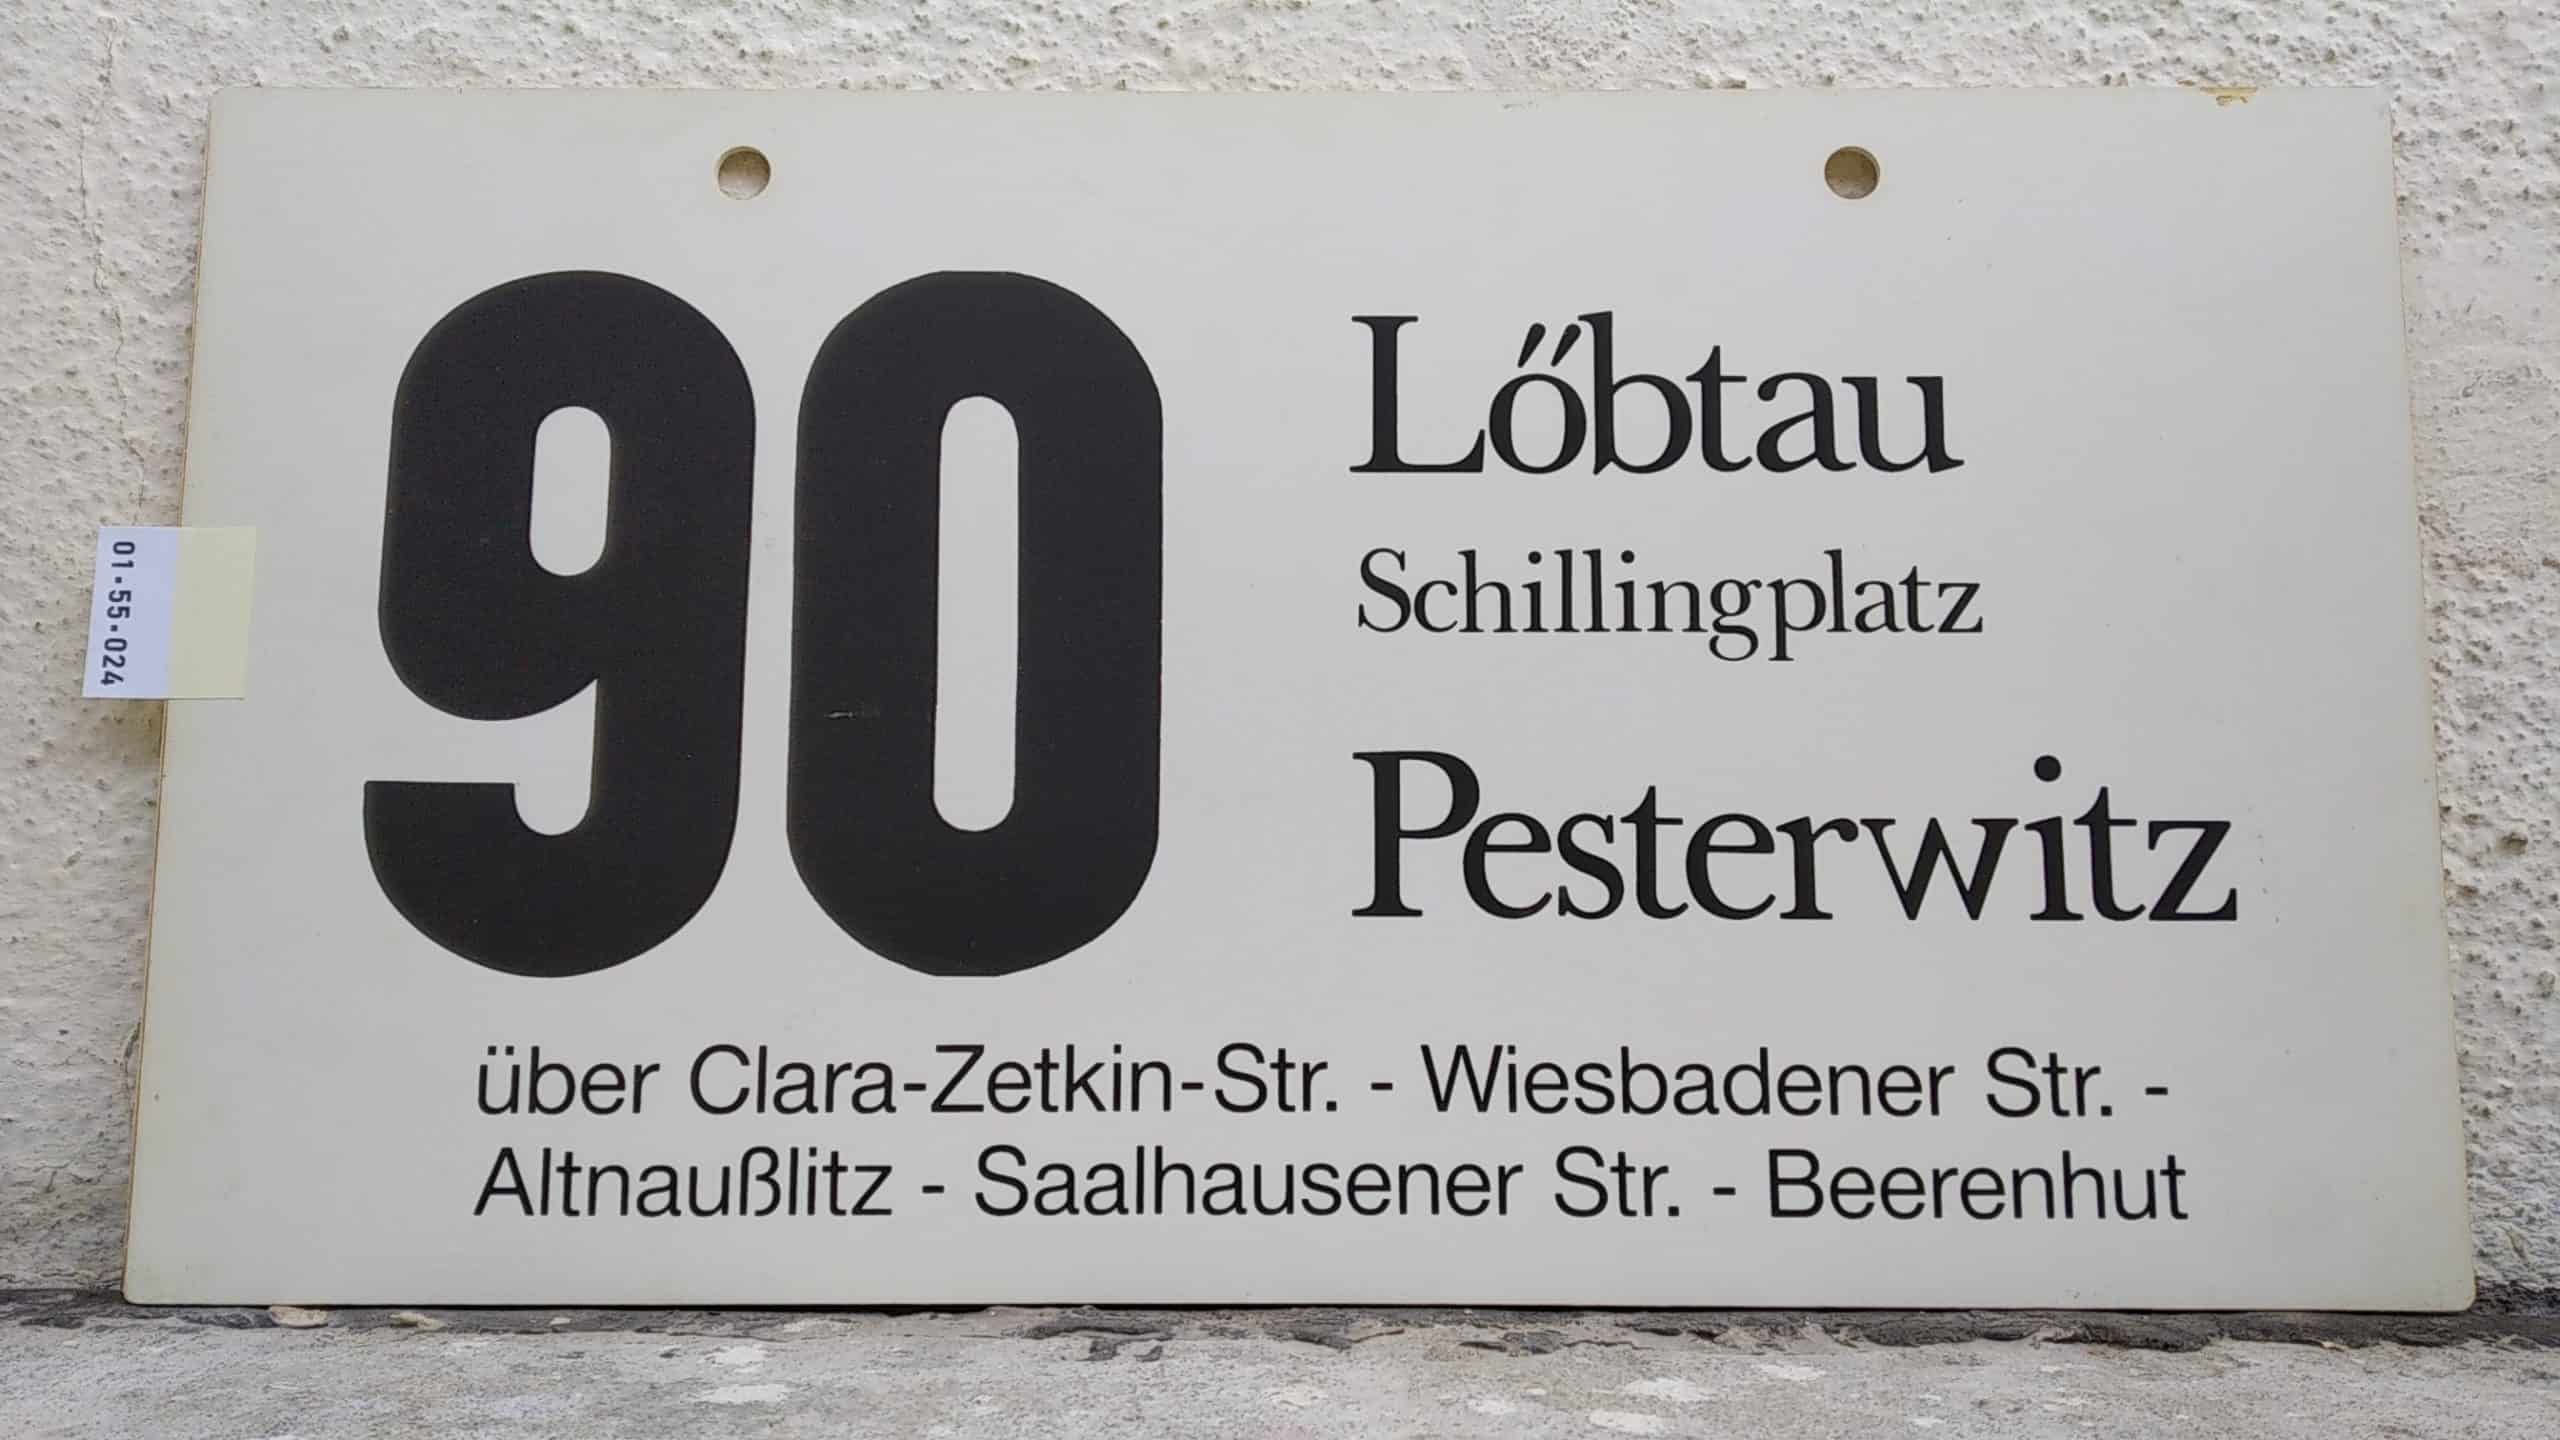 Ein seltenes Bus-Linienschild aus Dresden der Linie 90 von Löbtau Schillingplatz nach Pesterwitz